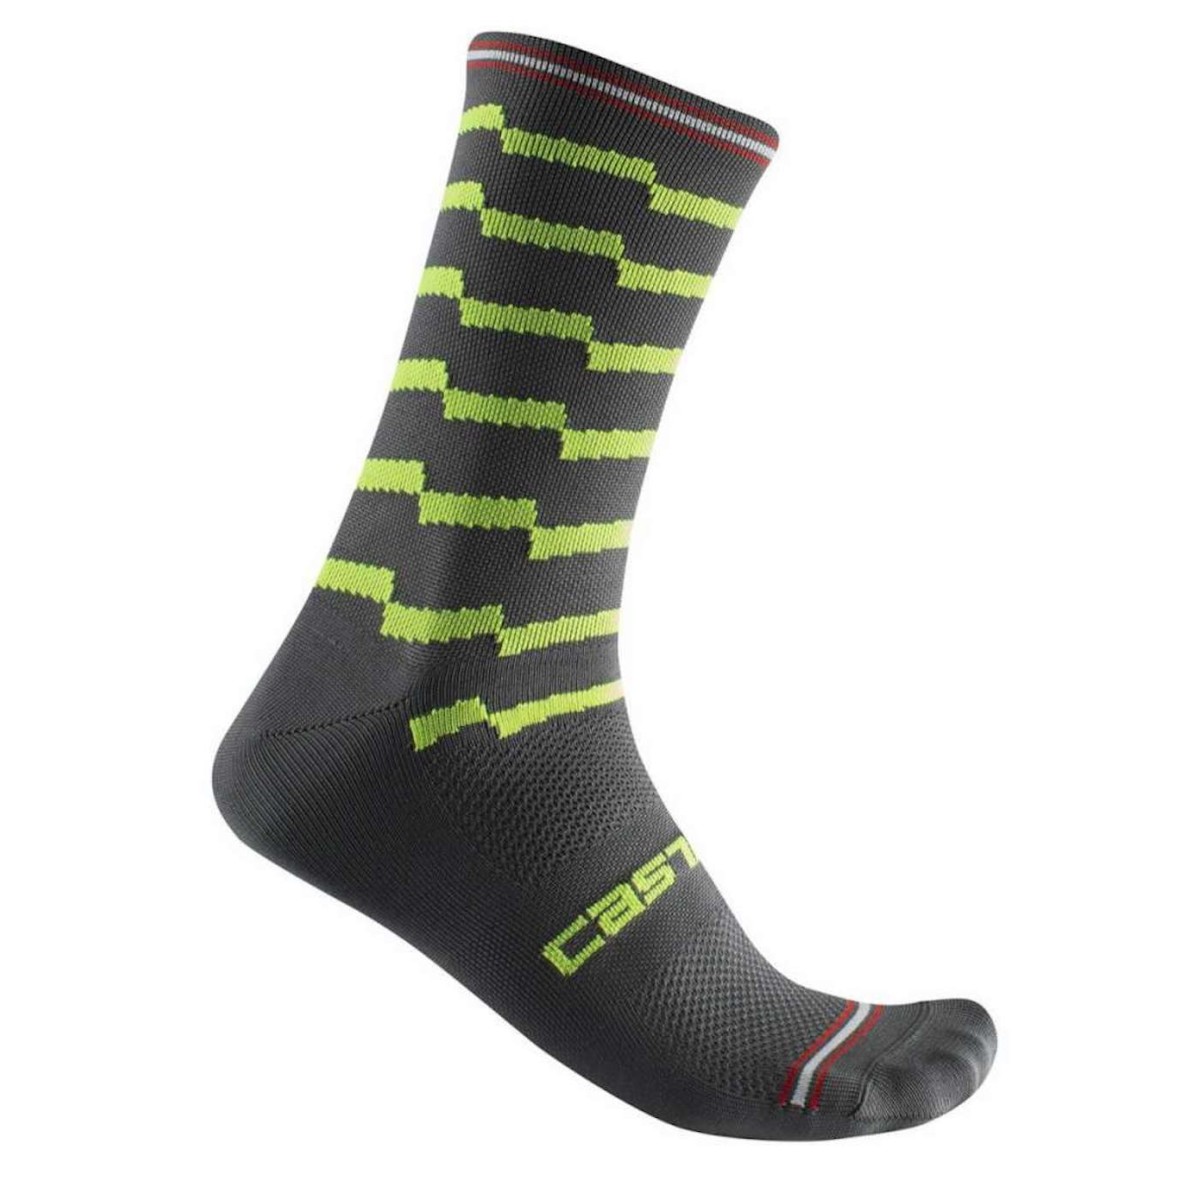 CASTELLI UNLIMITED 18 socks - black/green